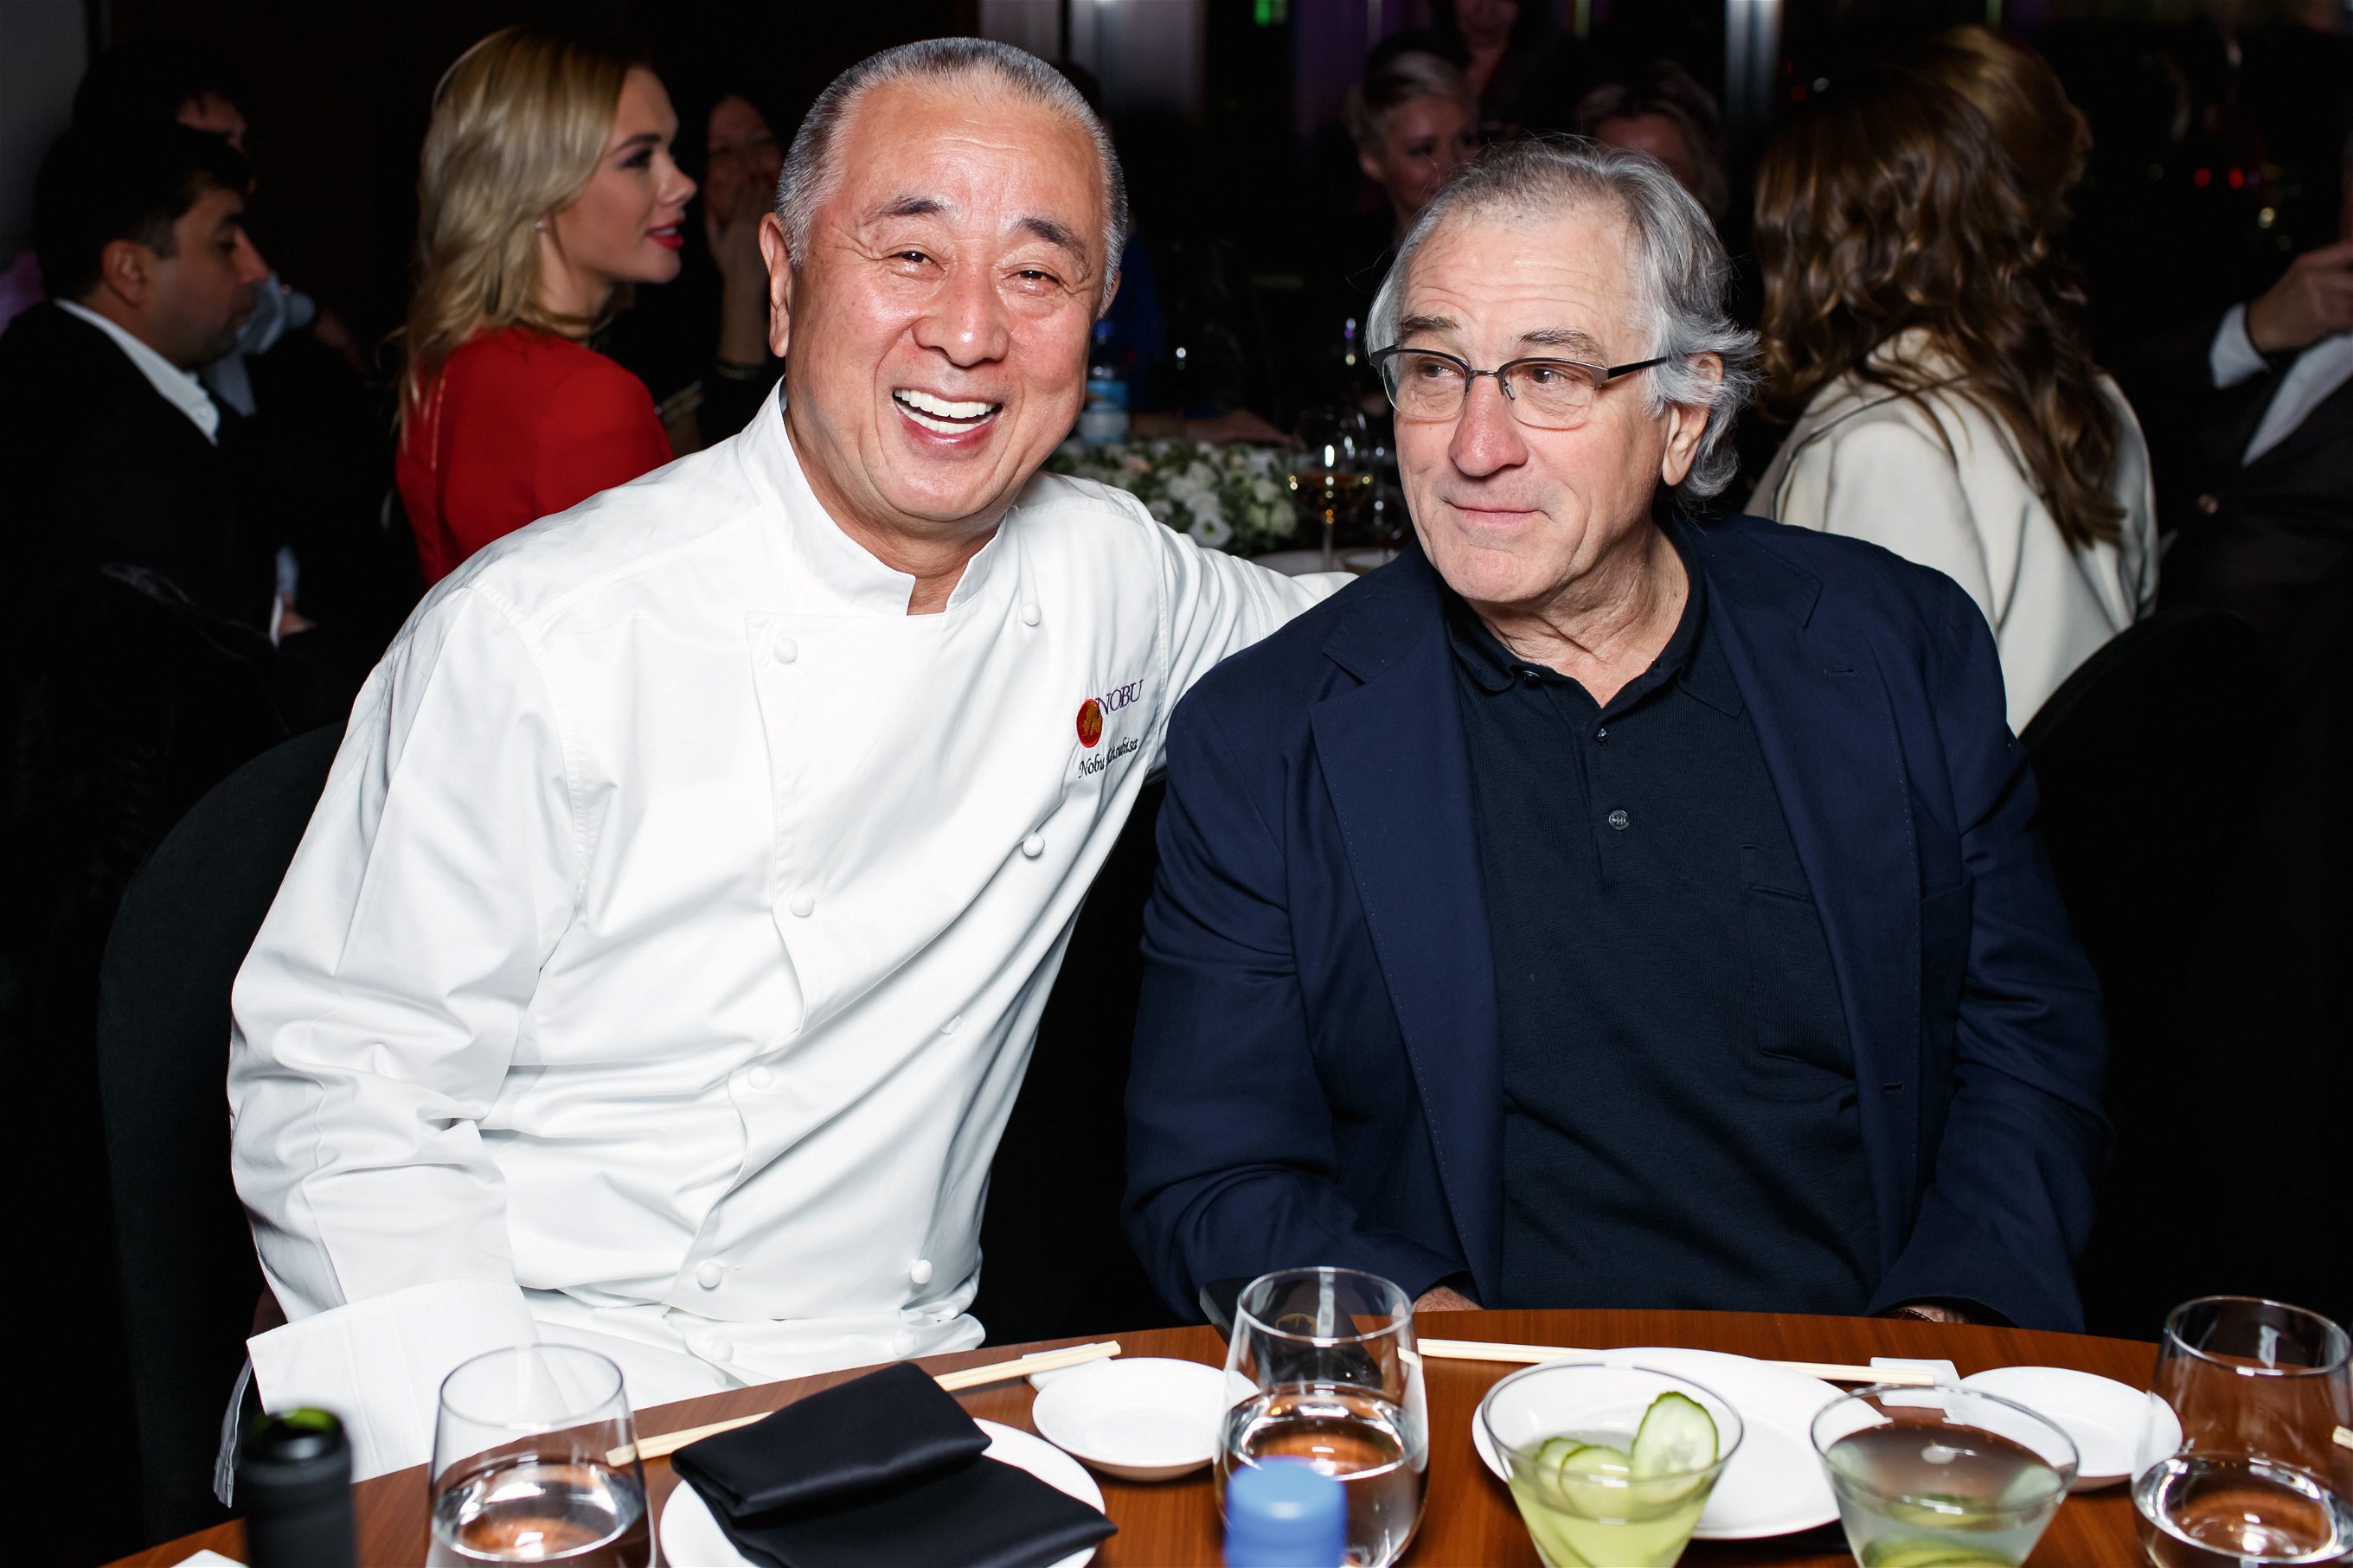 Seit den 1990ern erfolgreiche Geschäftspartner: Robert De Niro mit dem japanischen Sushi-Meister Nobu Matsuhisa.